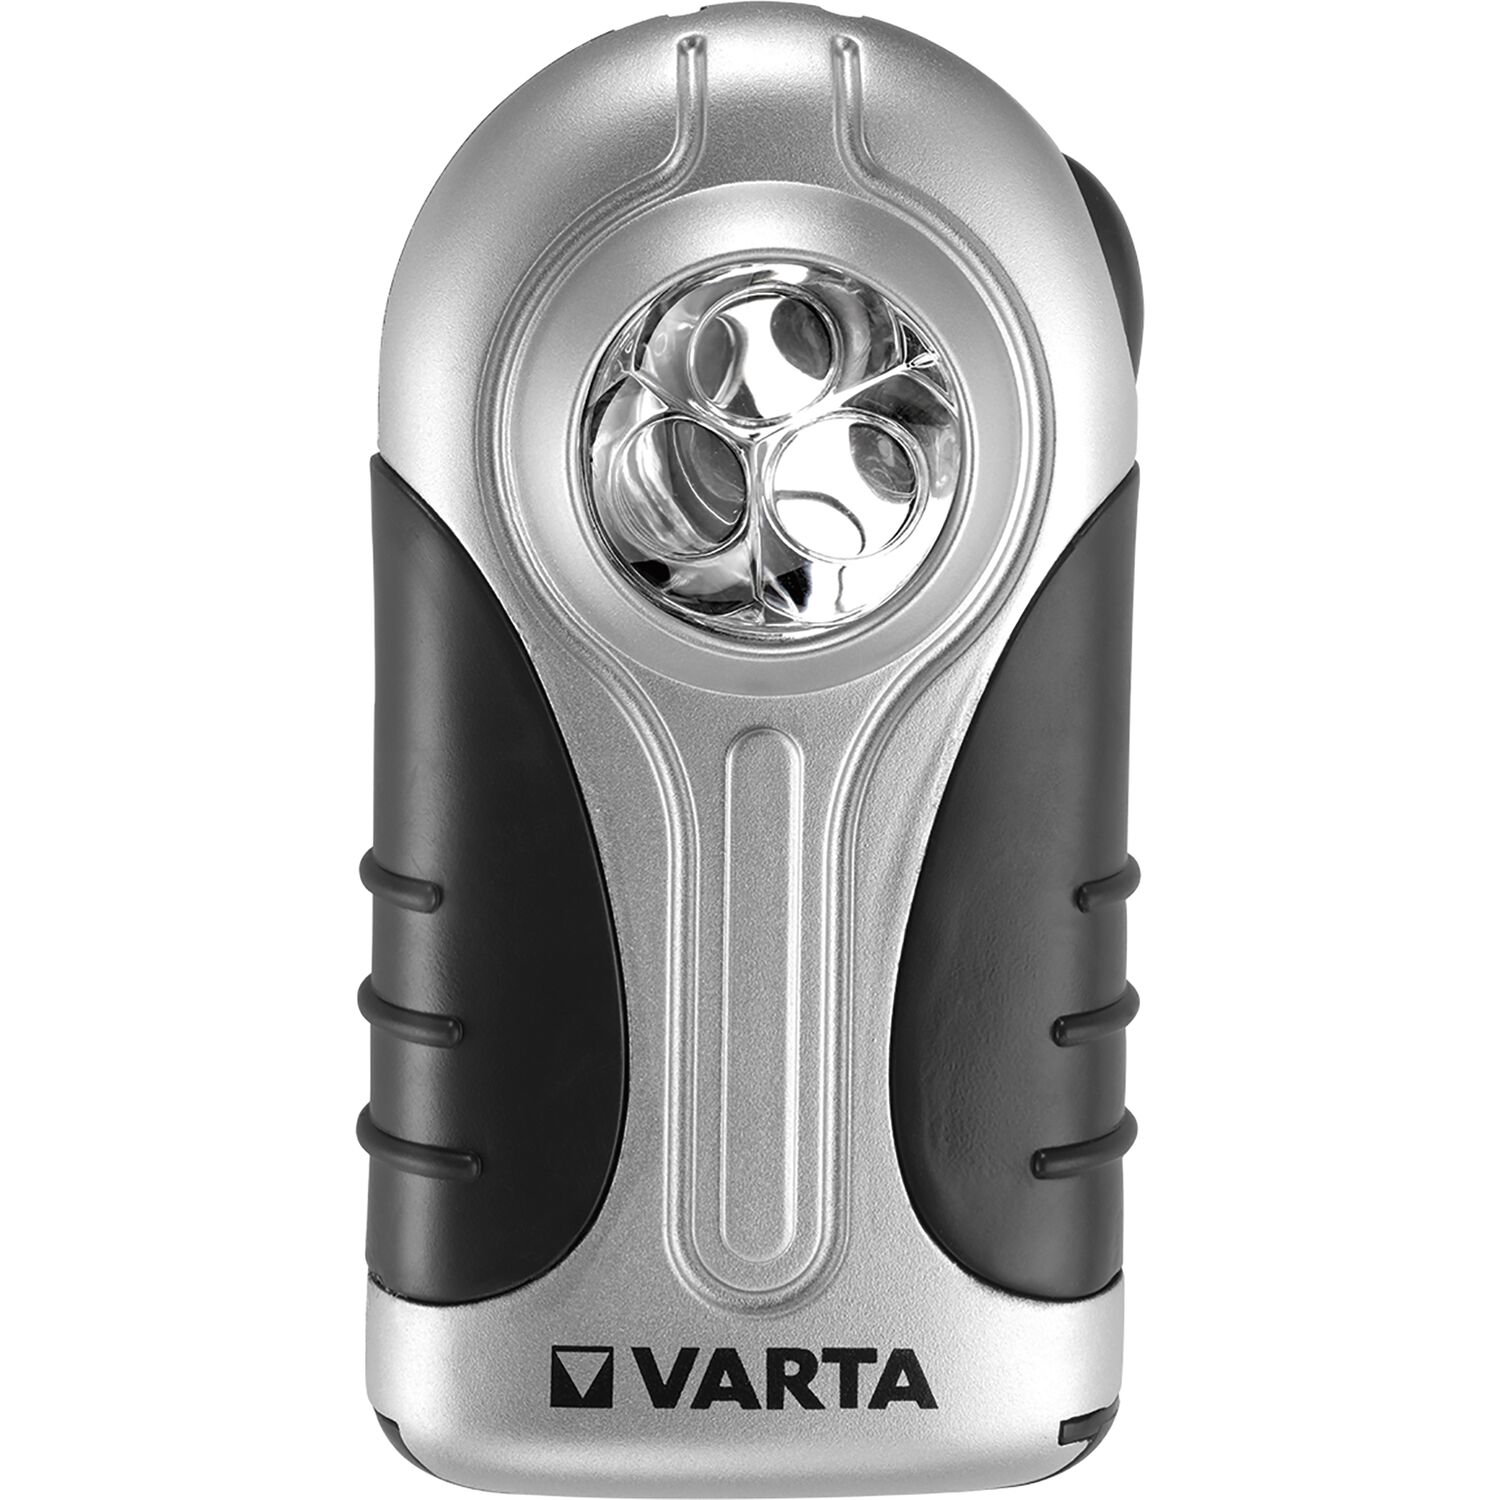 Varta Silver LED Taschenlampe (Flachleuchte) 3x mit vasalat Batterien und - Halteclip